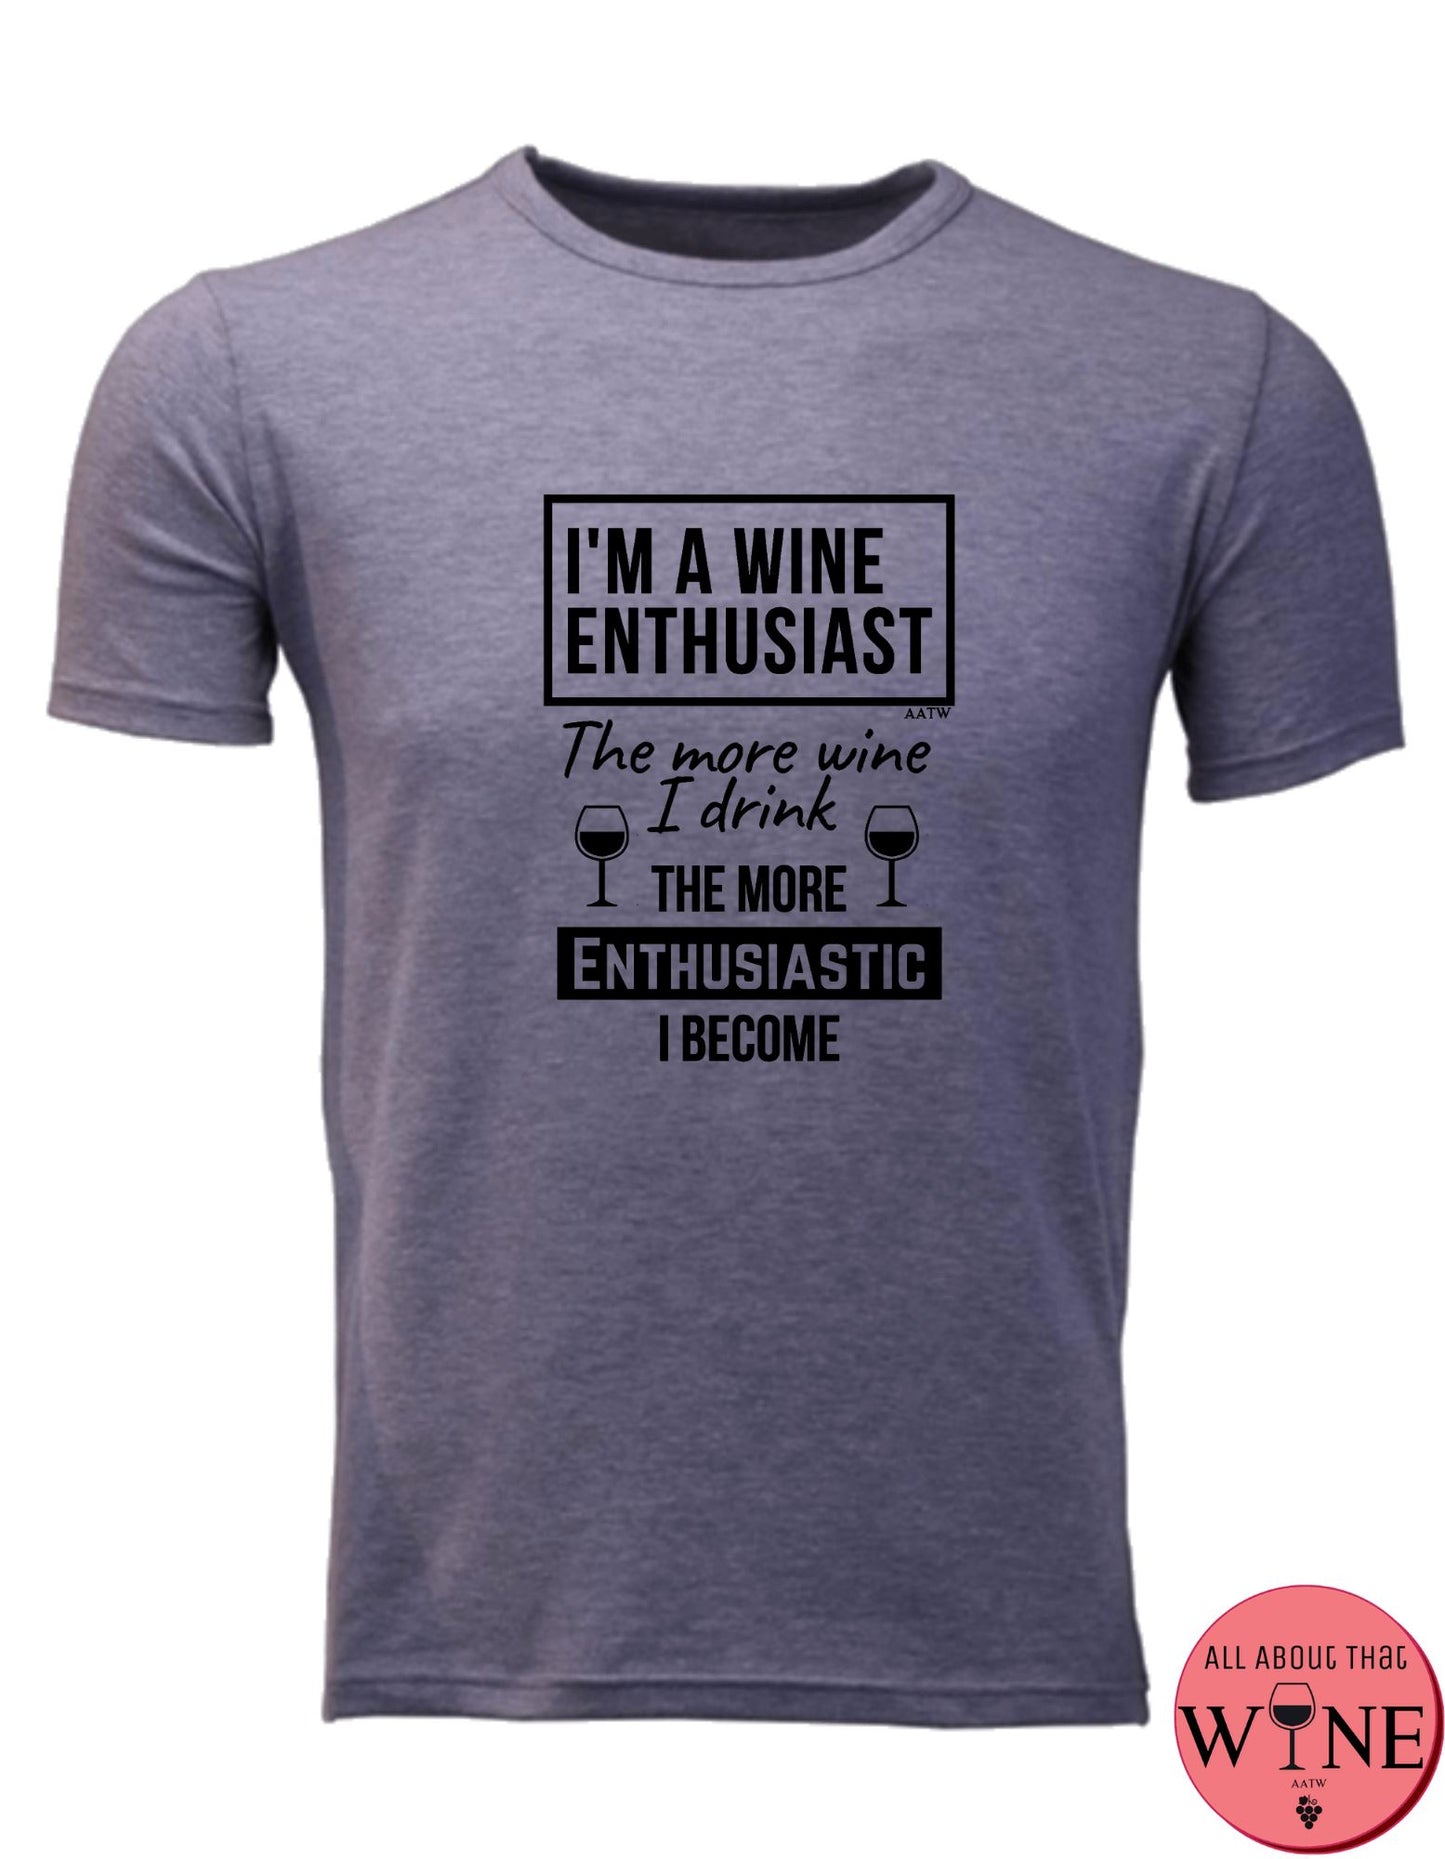 I'm A Wine Enthusiast - Unisex/Male S Grey melange with black